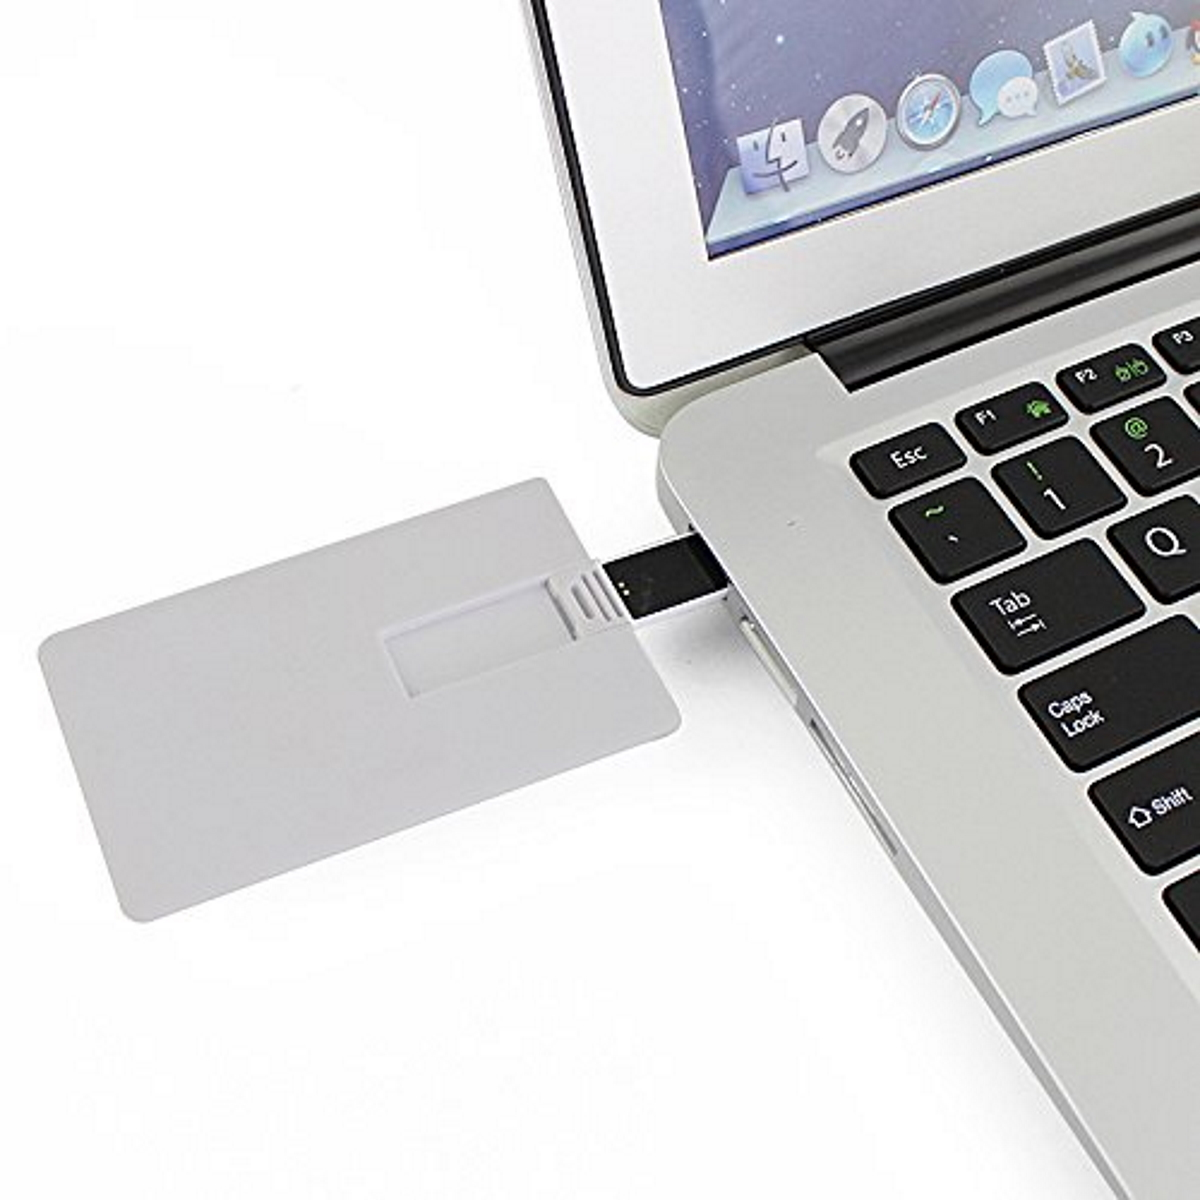 USB GERMANY 64 ® (Weiss, Kreditkarte GB) USB-Stick